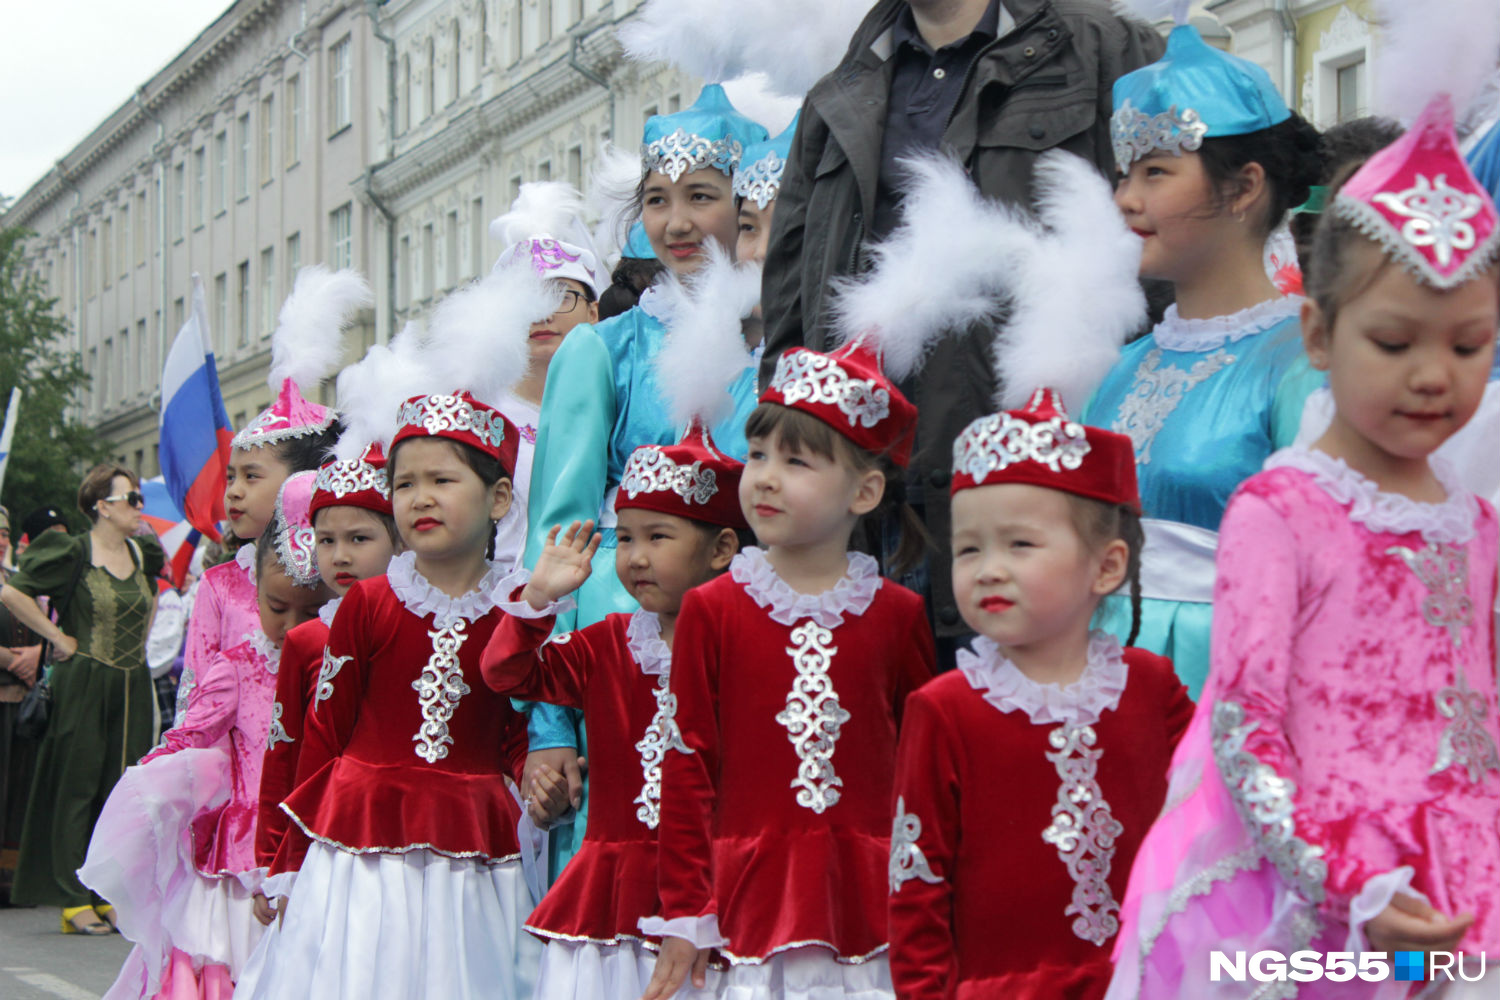 Казахи армяне. Сибирские национальные костюмы дети смеются.